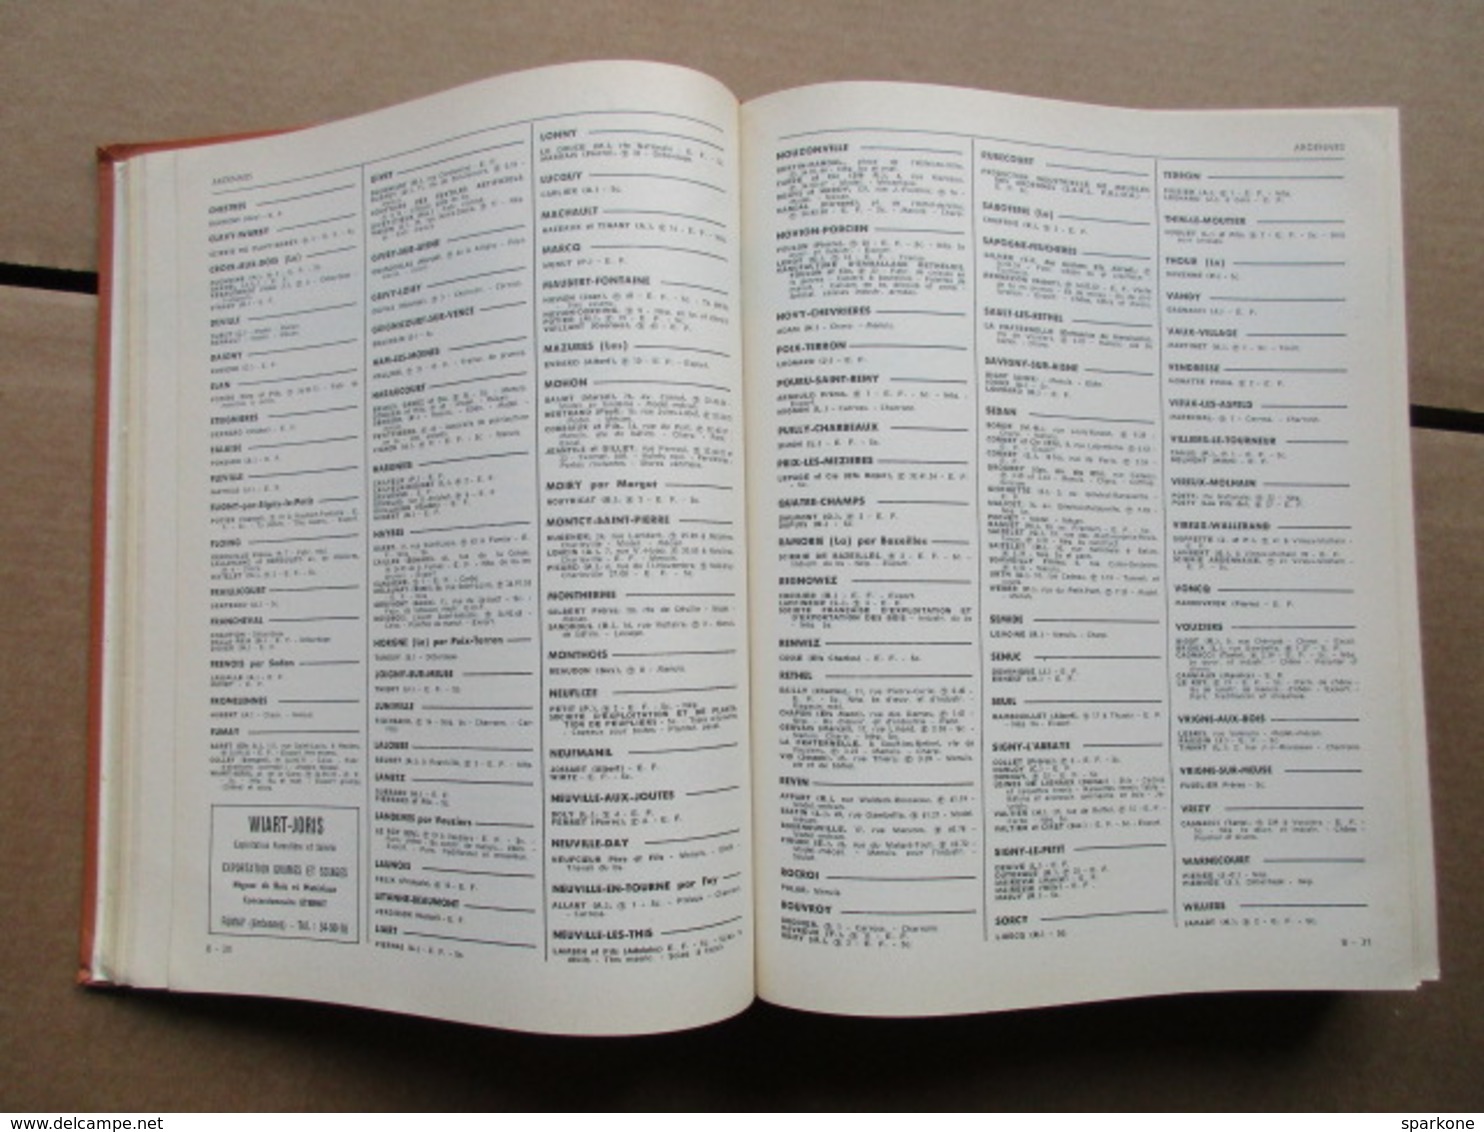 Annuaire général du Commerce et des industries du Bois / Ufap / 1963 - 1964